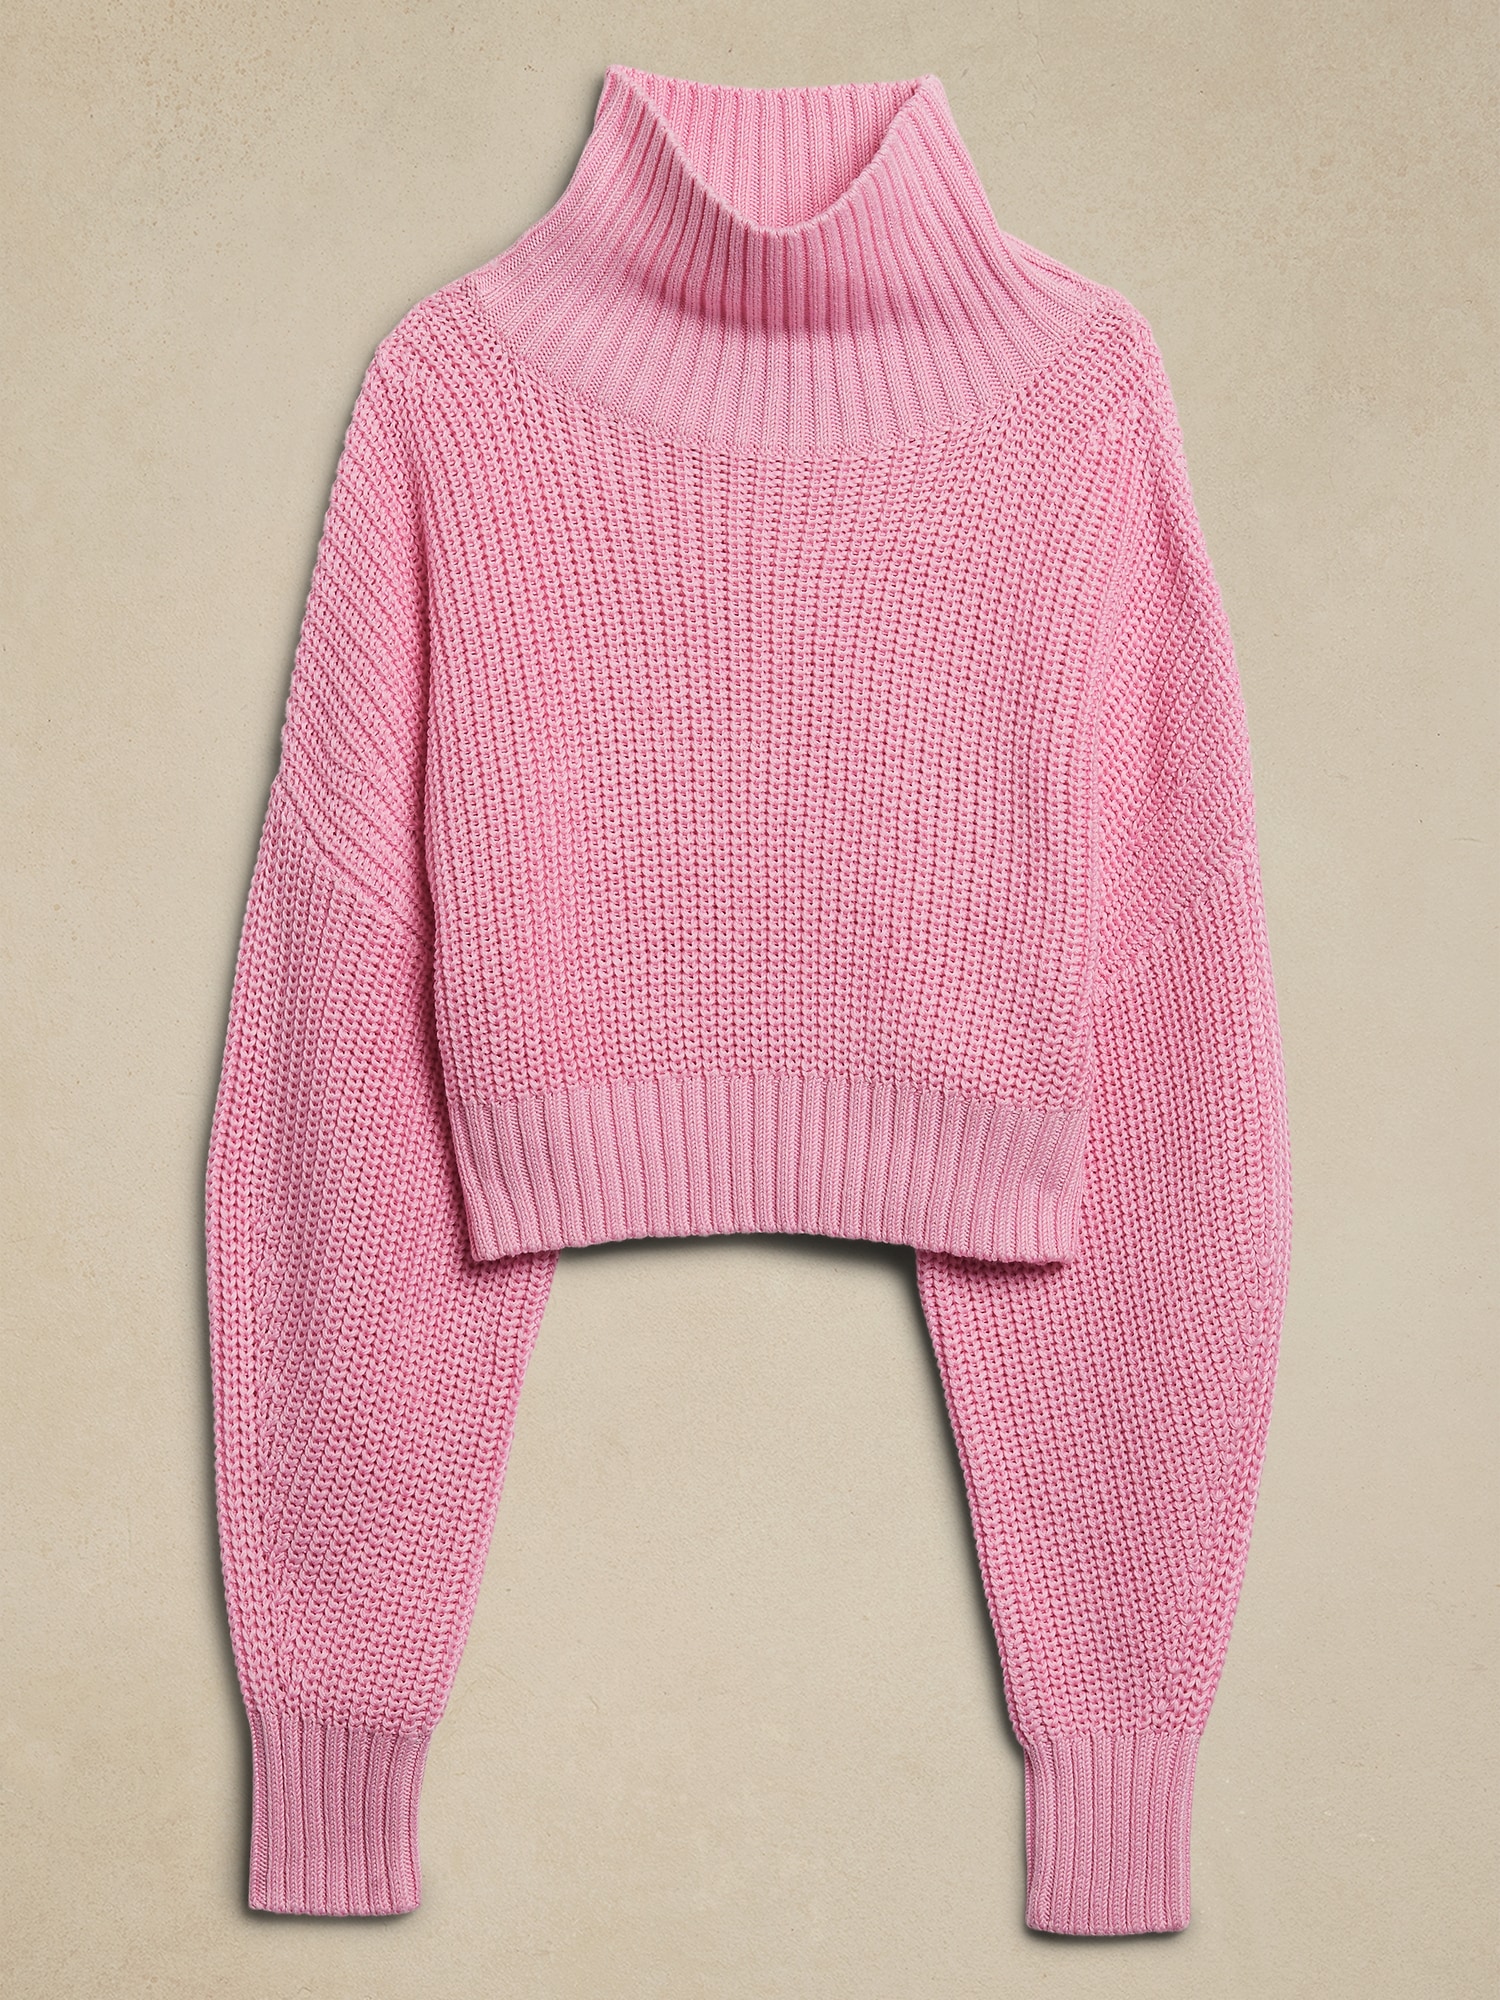 Janie Cropped Sweater